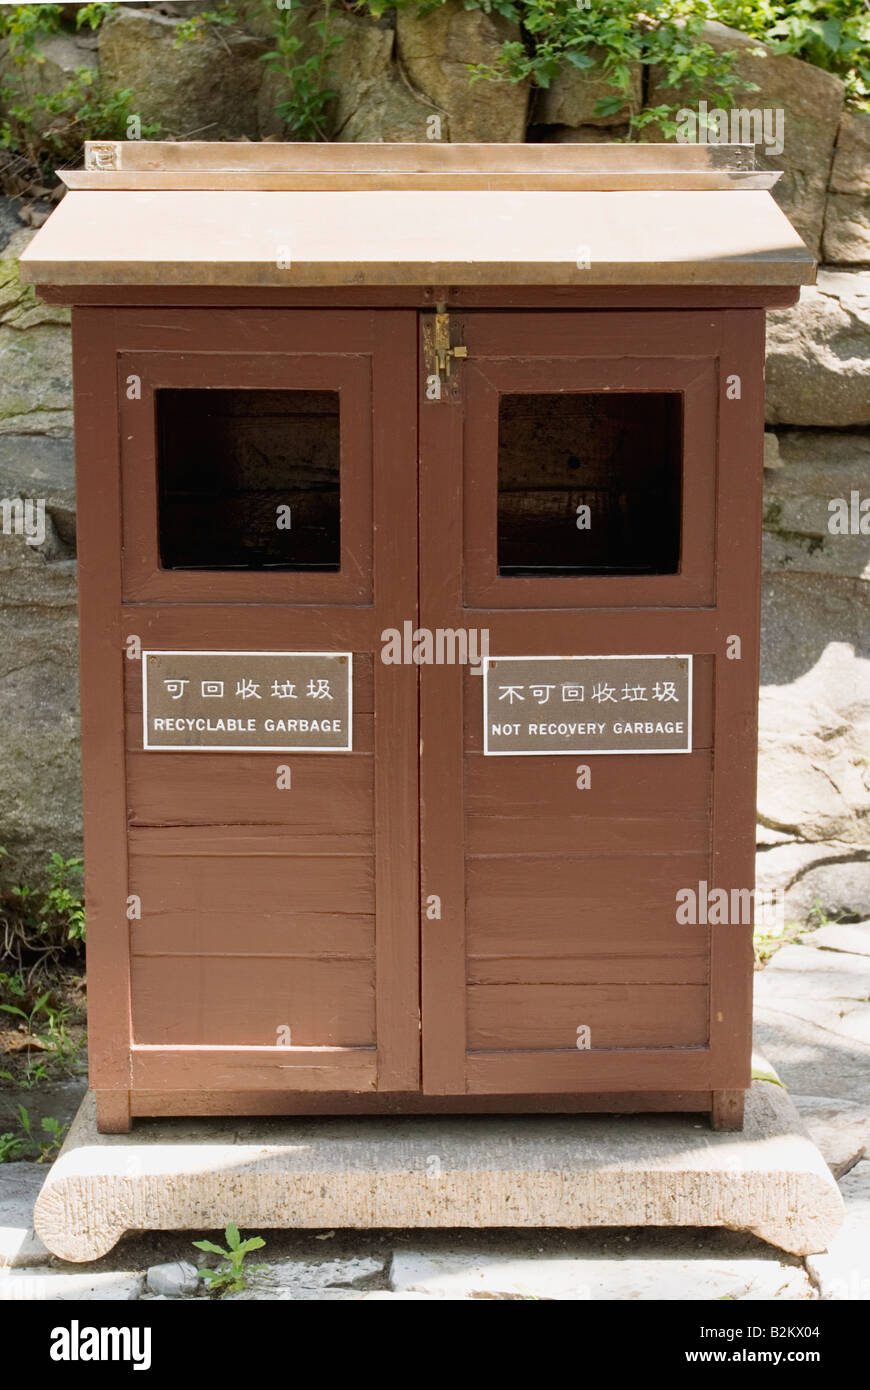 China, Chinese recycling bin Stock Photo